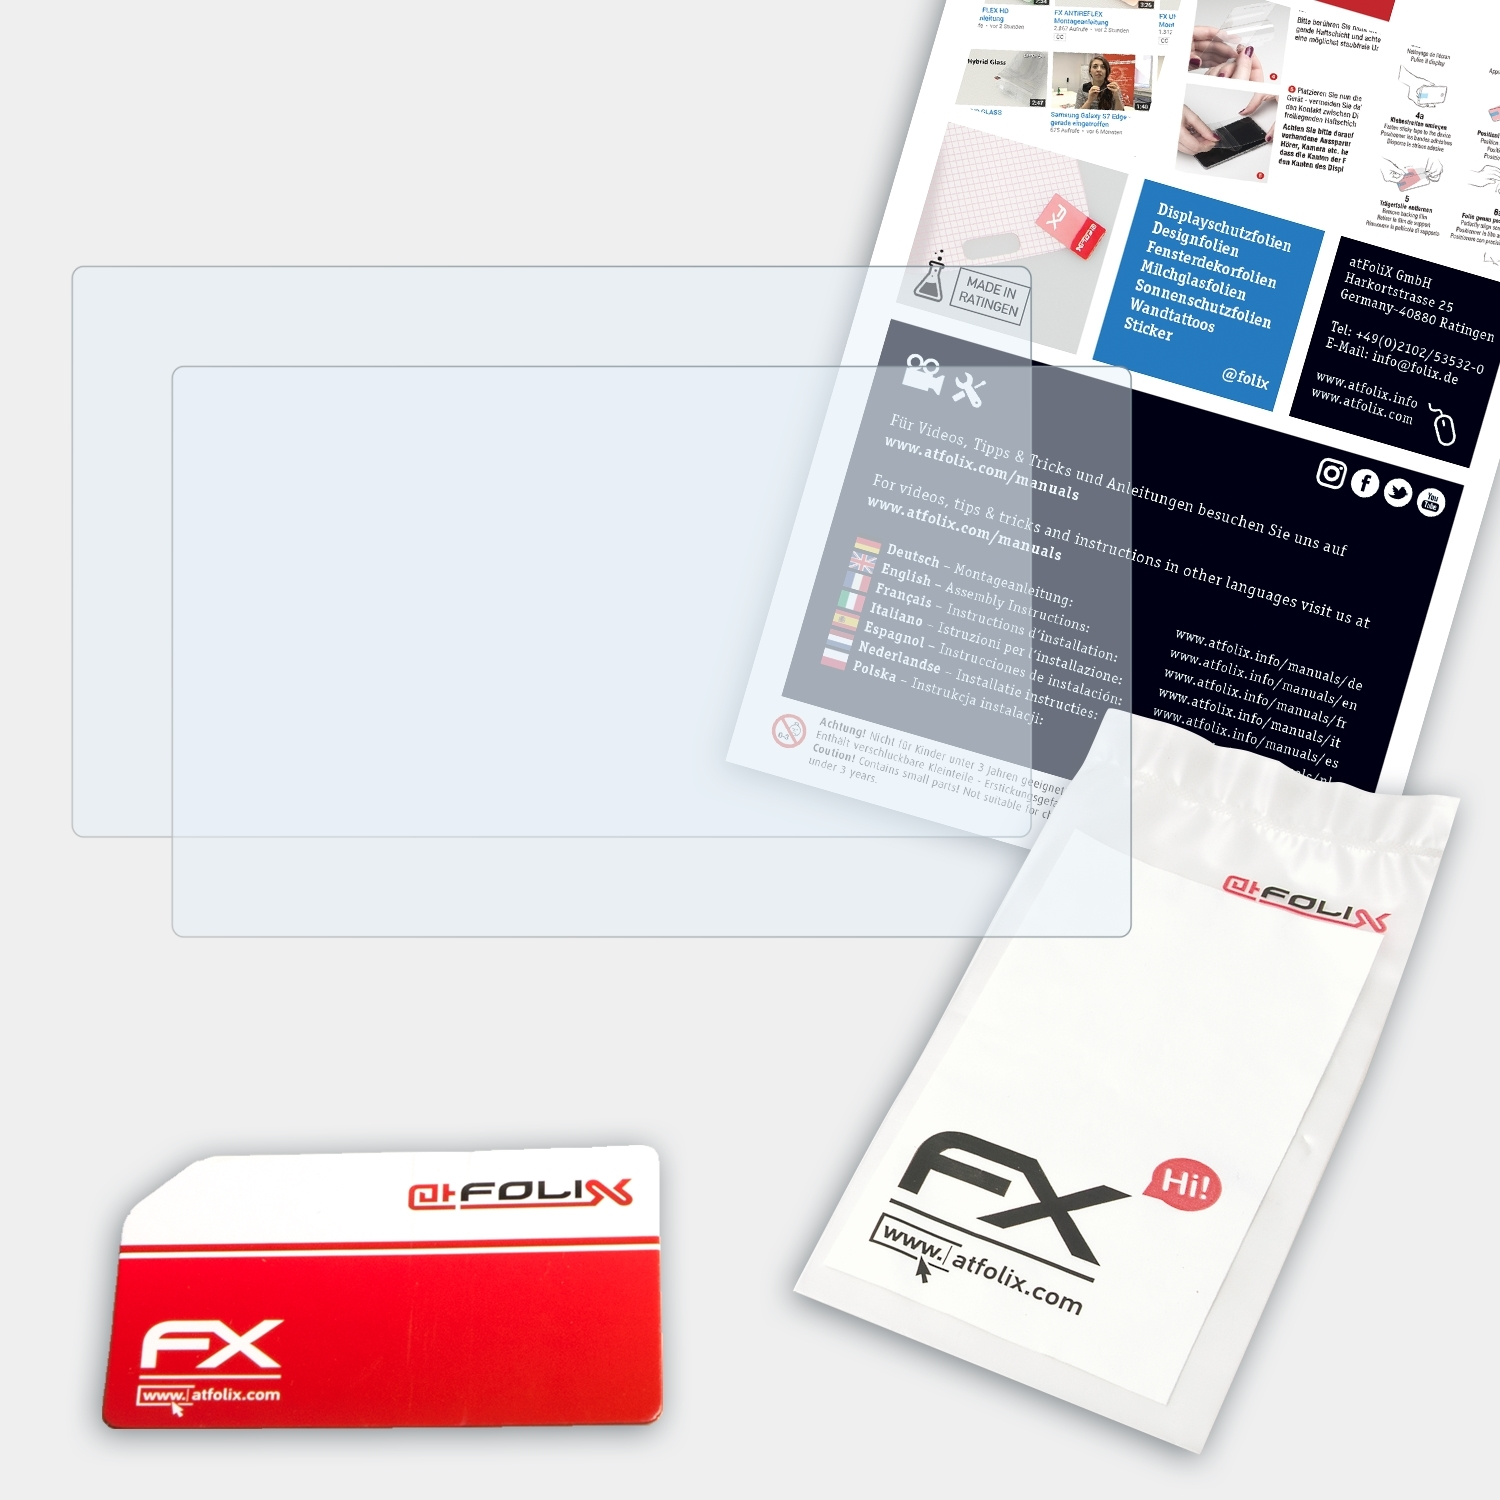 FX-Clear Pioneer Displayschutz(für ATFOLIX 2x SPH-DA250DAB)